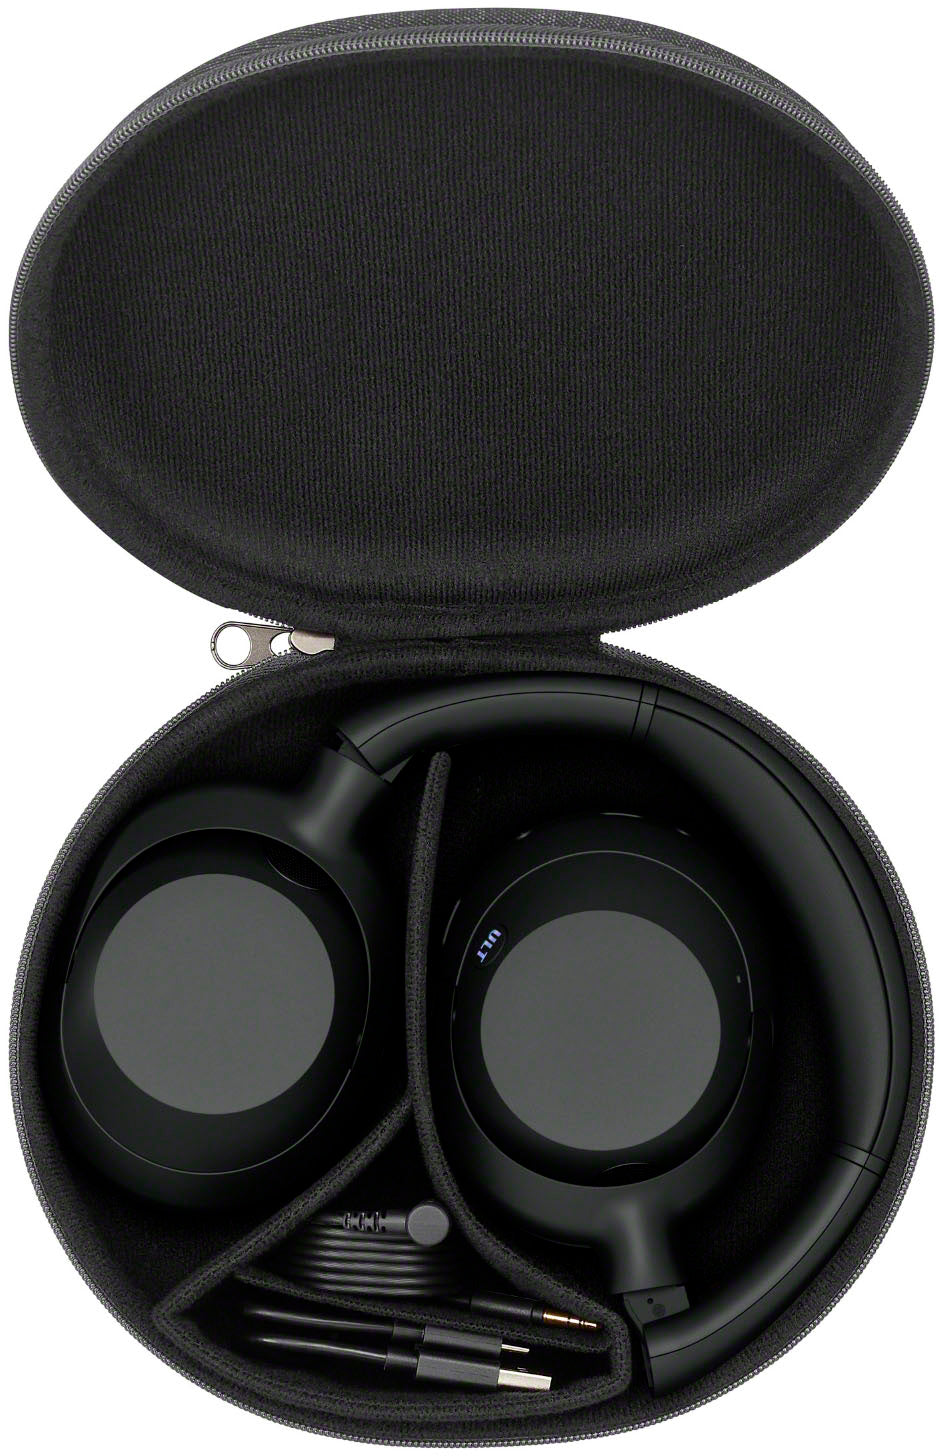 Sony - ULT WEAR Wireless Noise Canceling Headphones - Black_1